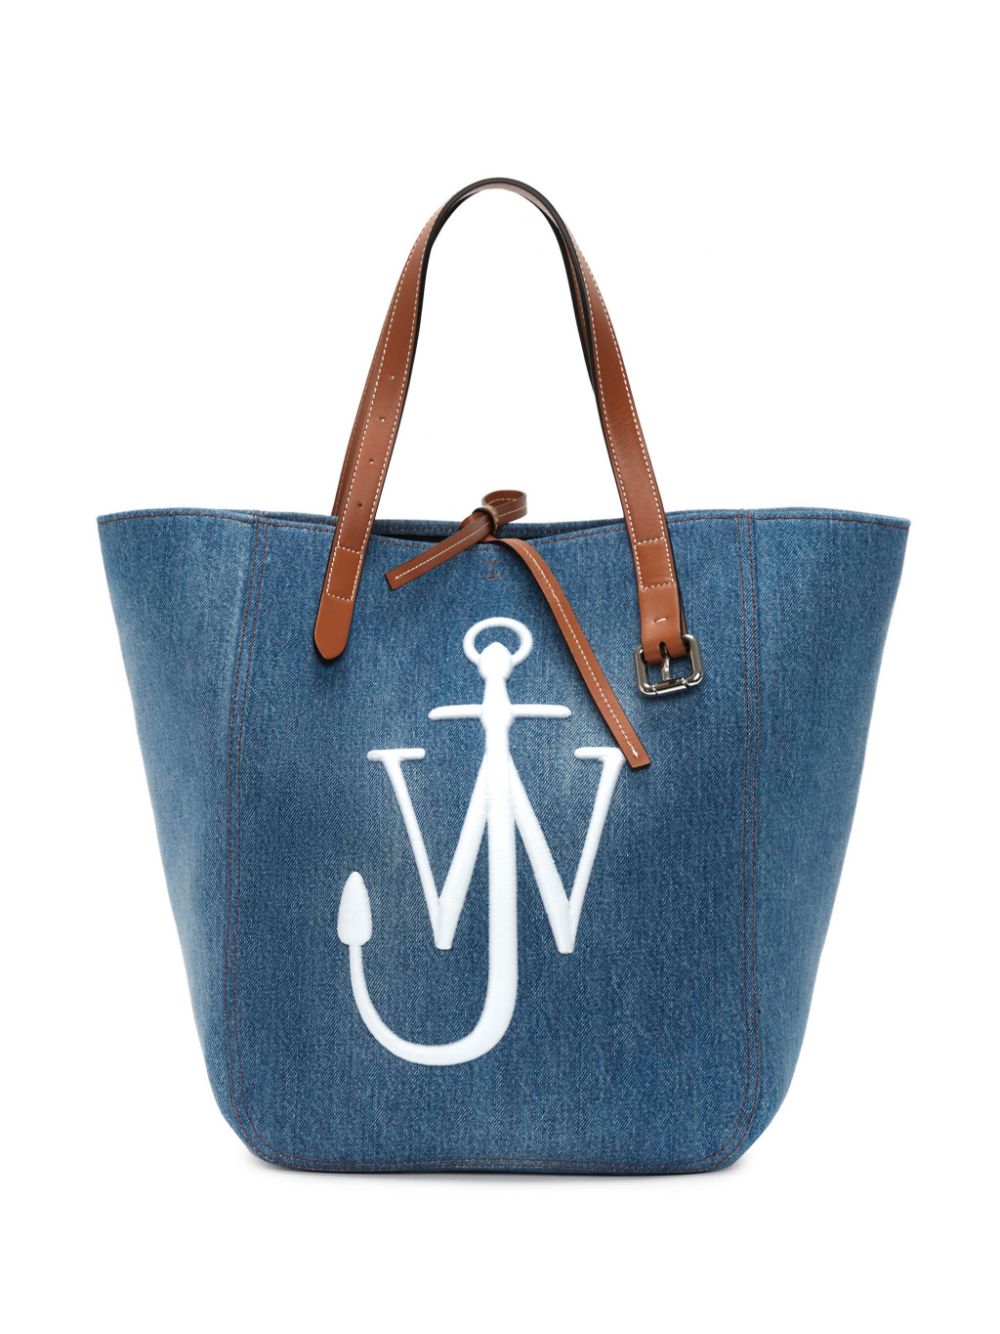 Túi Tote màu xanh denim dành cho nữ với logo màu lạc đà và điểm nhấn màu trắng